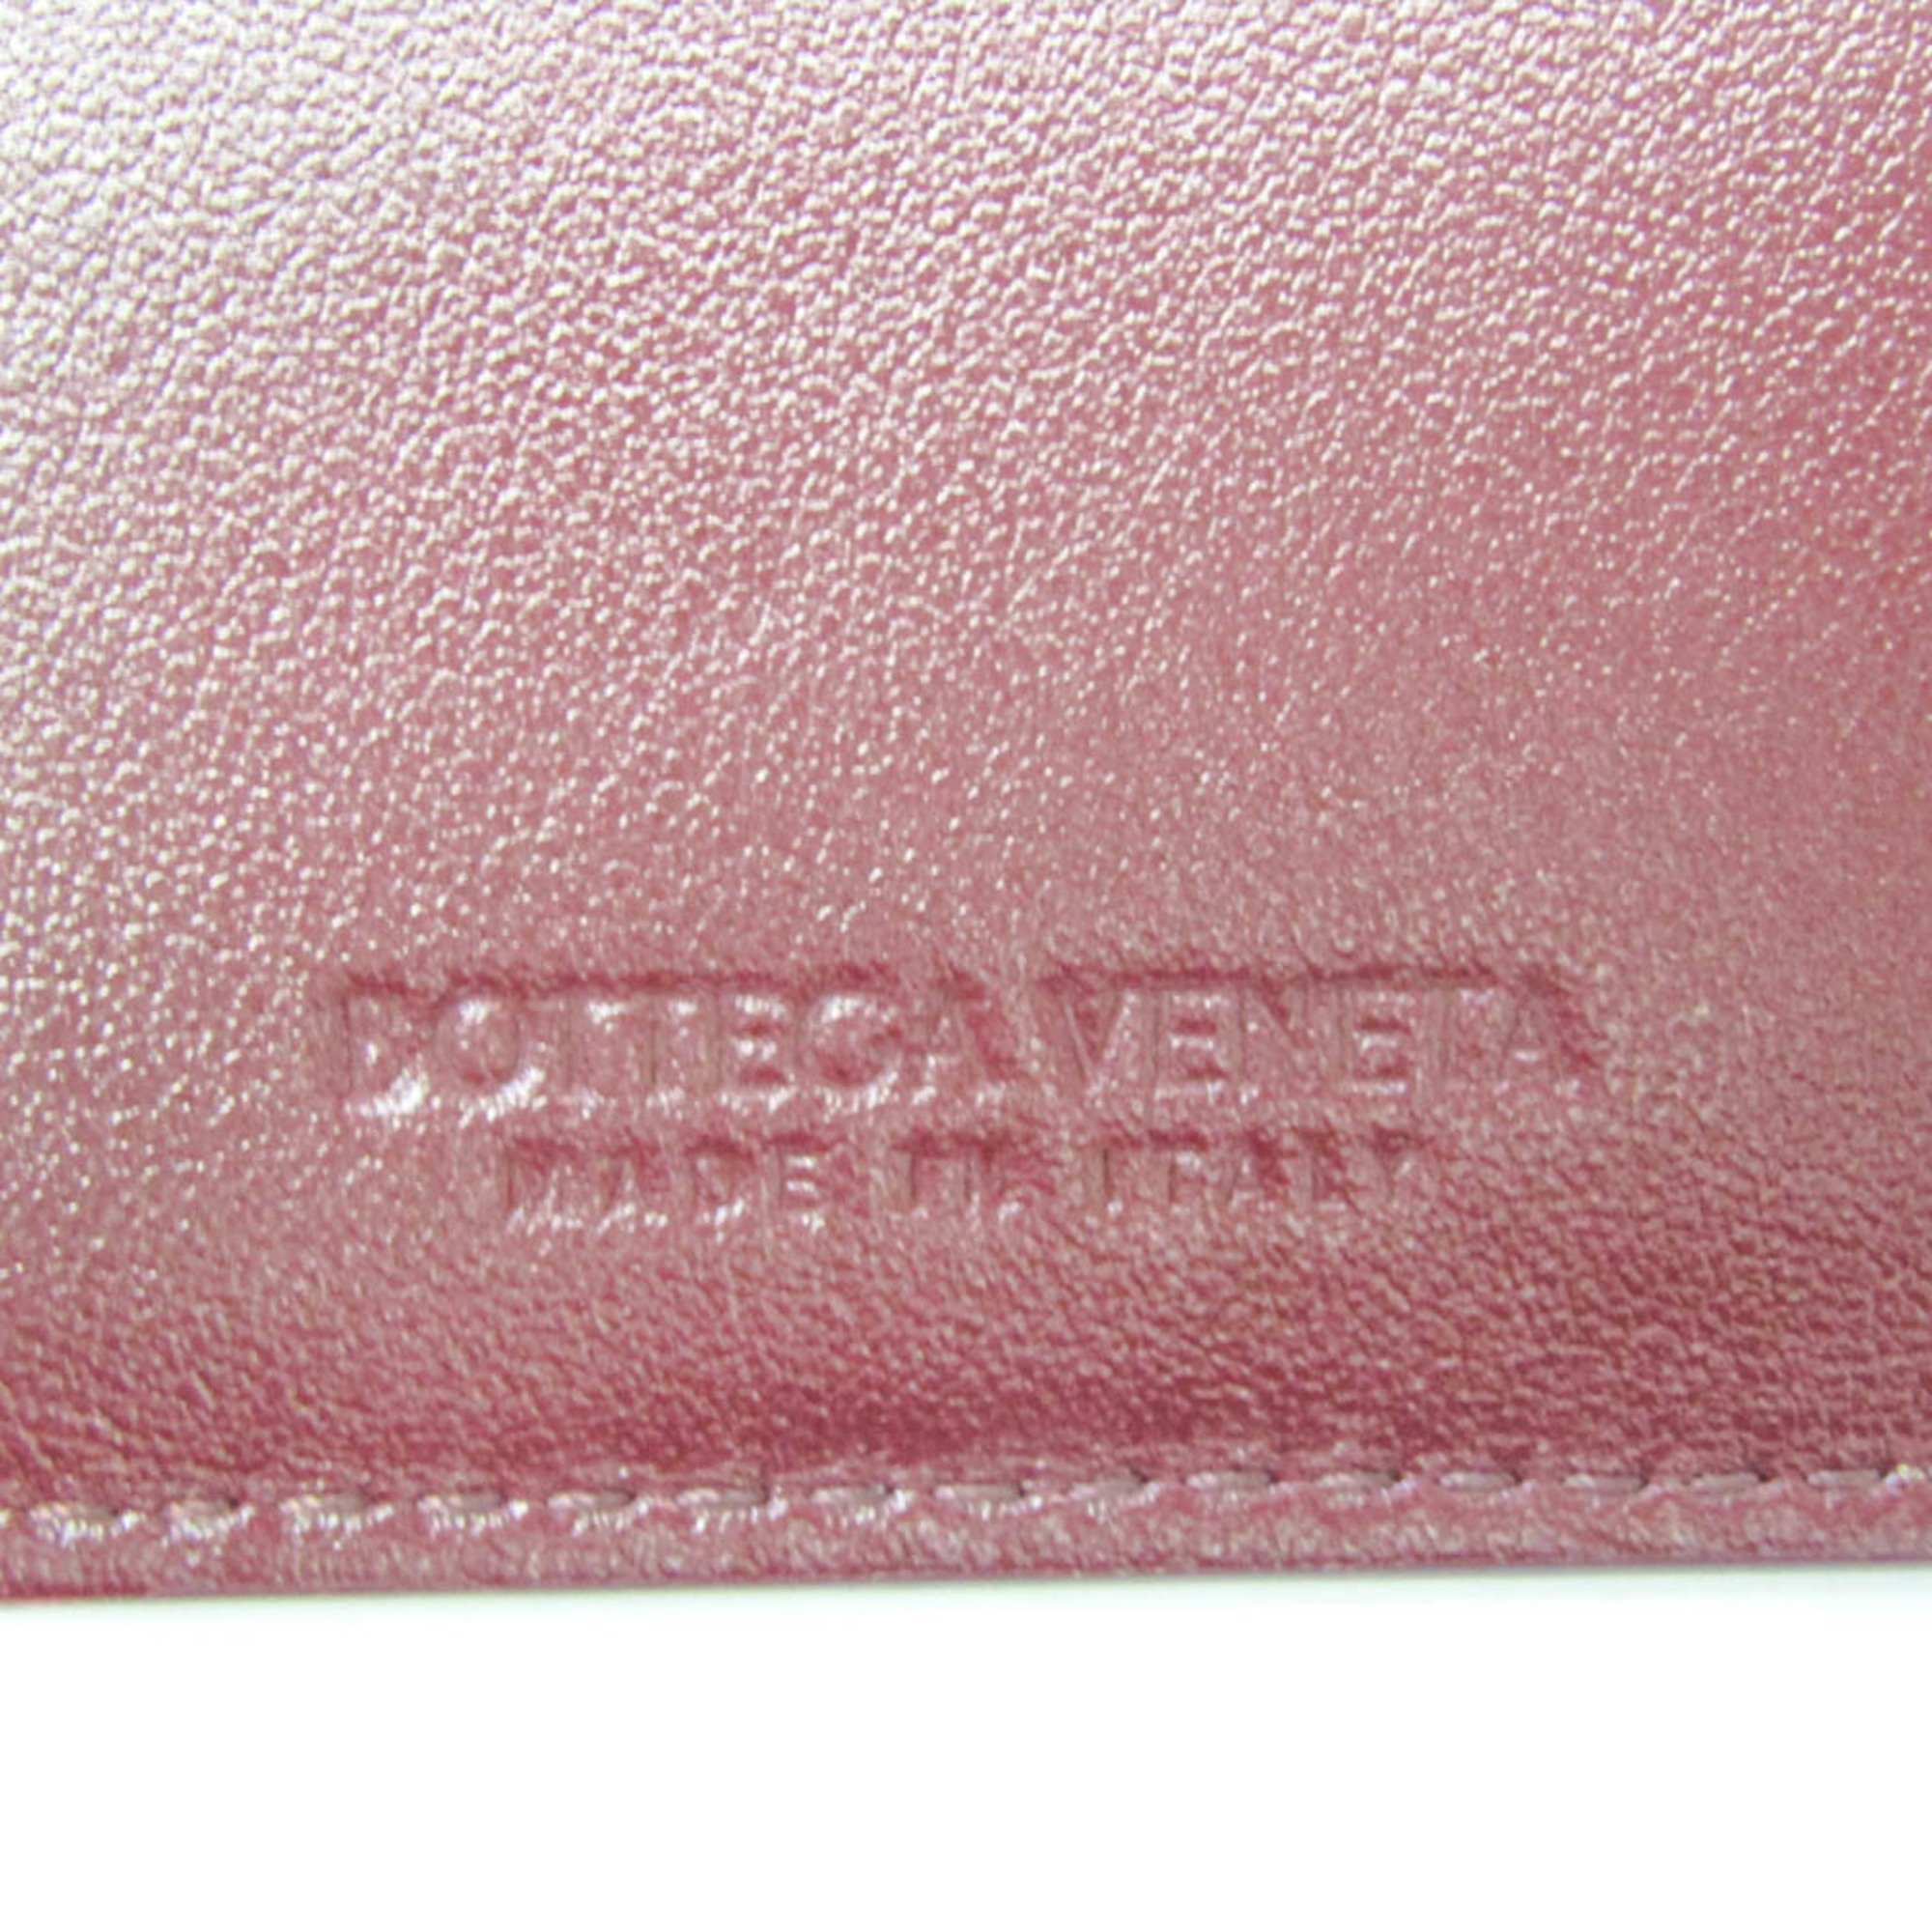 Bottega Veneta Intrecciato 593025 Women,Men Leather Key Case Bordeaux